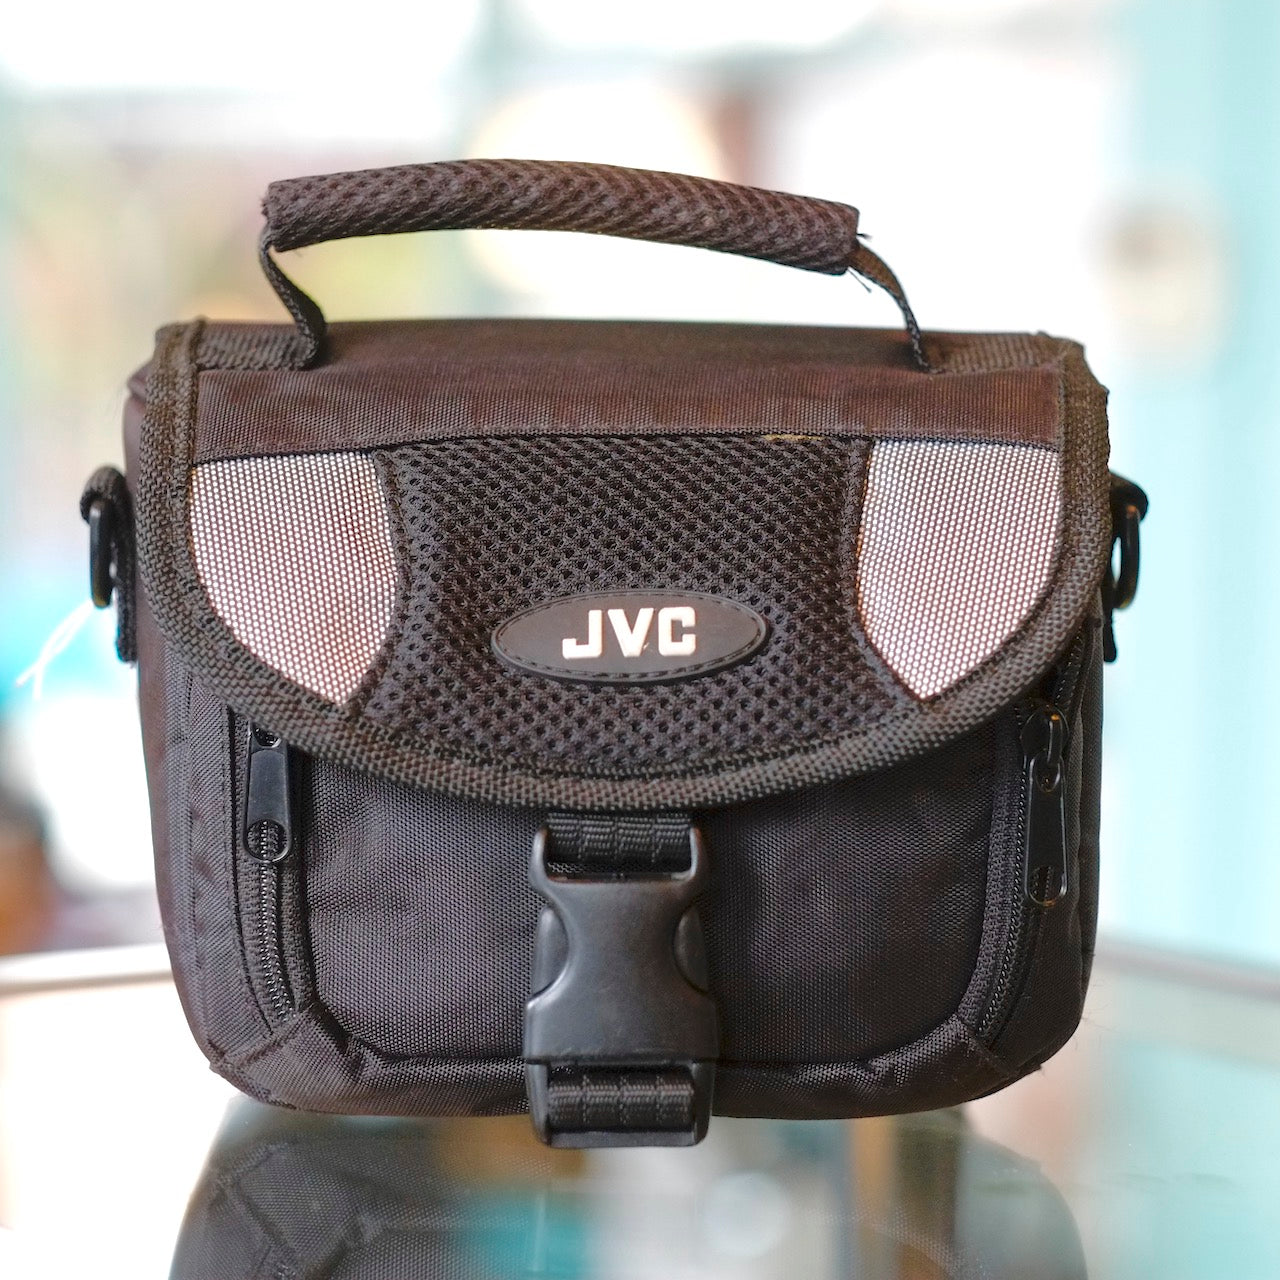 JVC bag